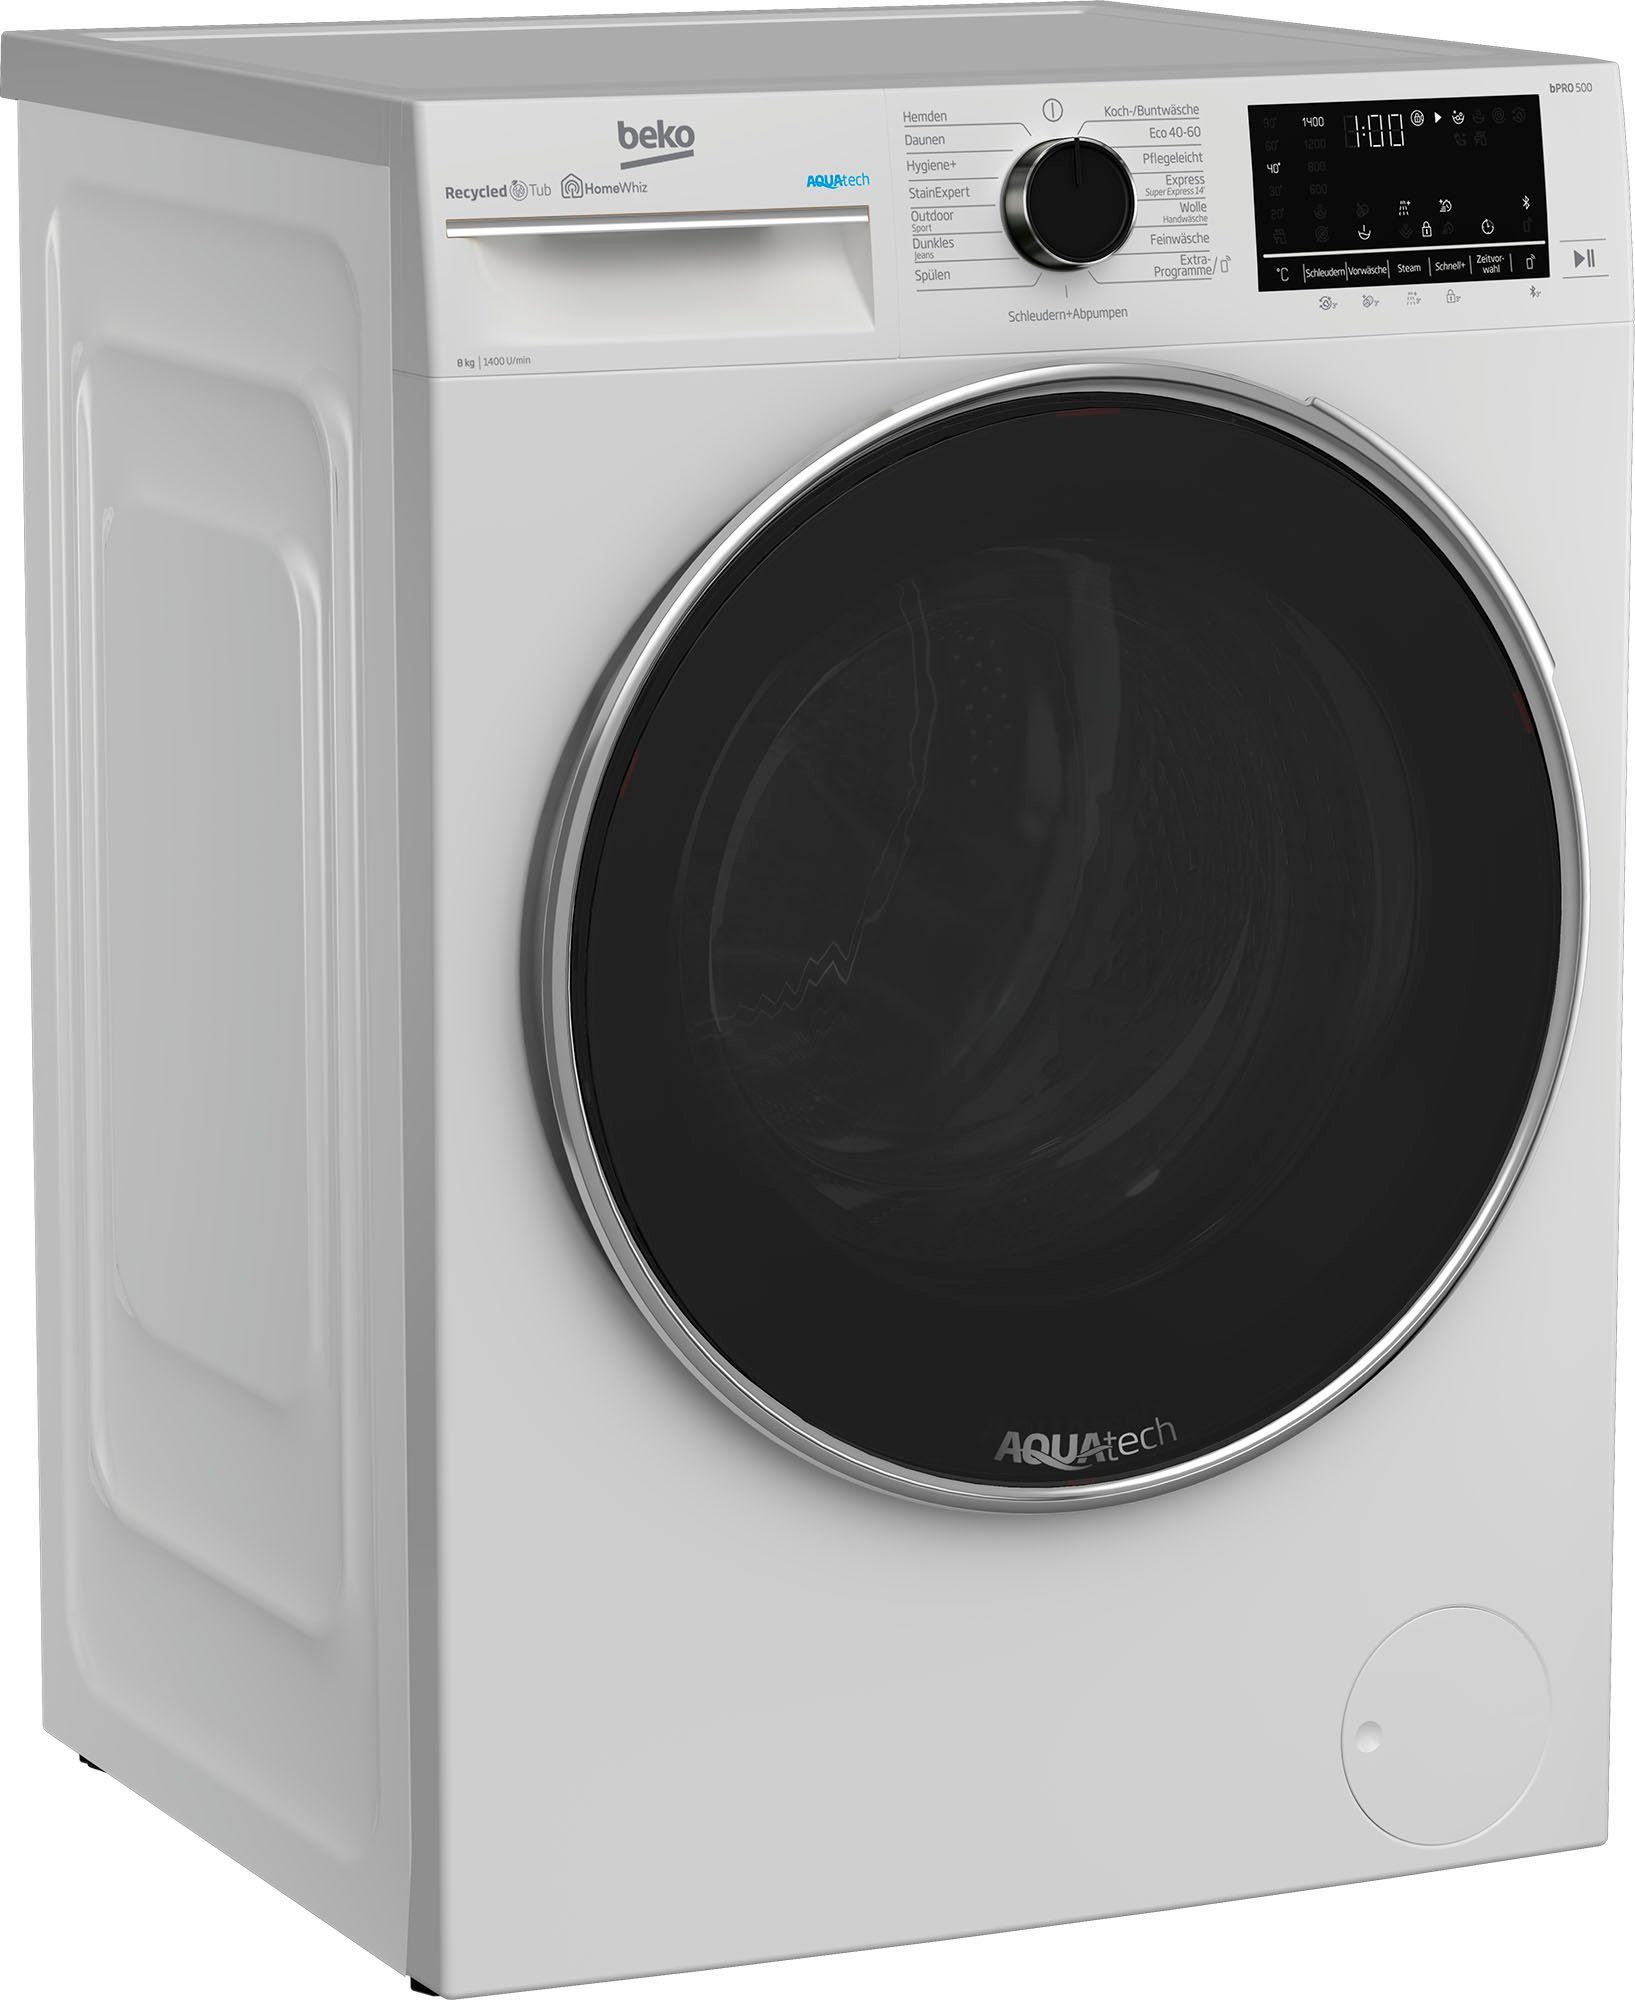 Notfallgroßer Preisnachlass BEKO Waschmaschine B5WFU58418W, 8 kg, 1400 U/min